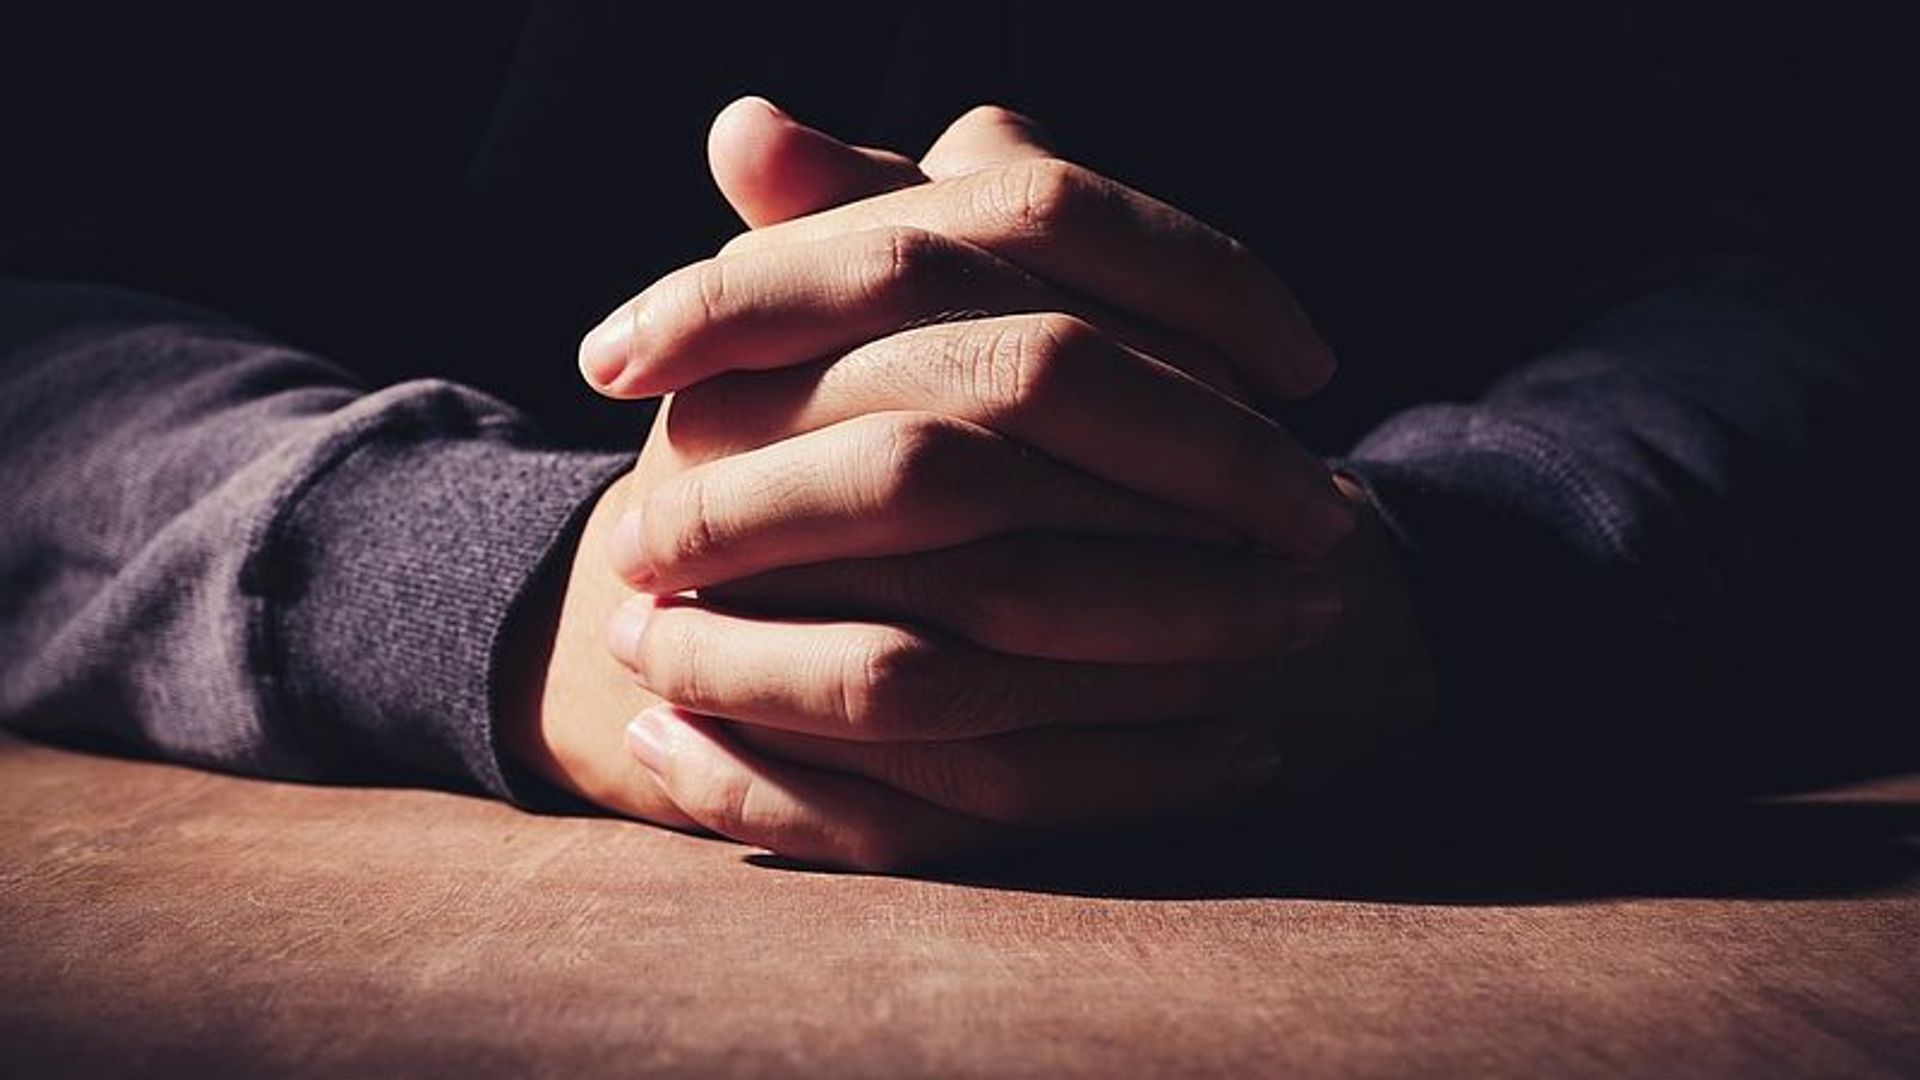 Lees ook: Leren bidden: 3 gebeden om de dag mee te beginnen